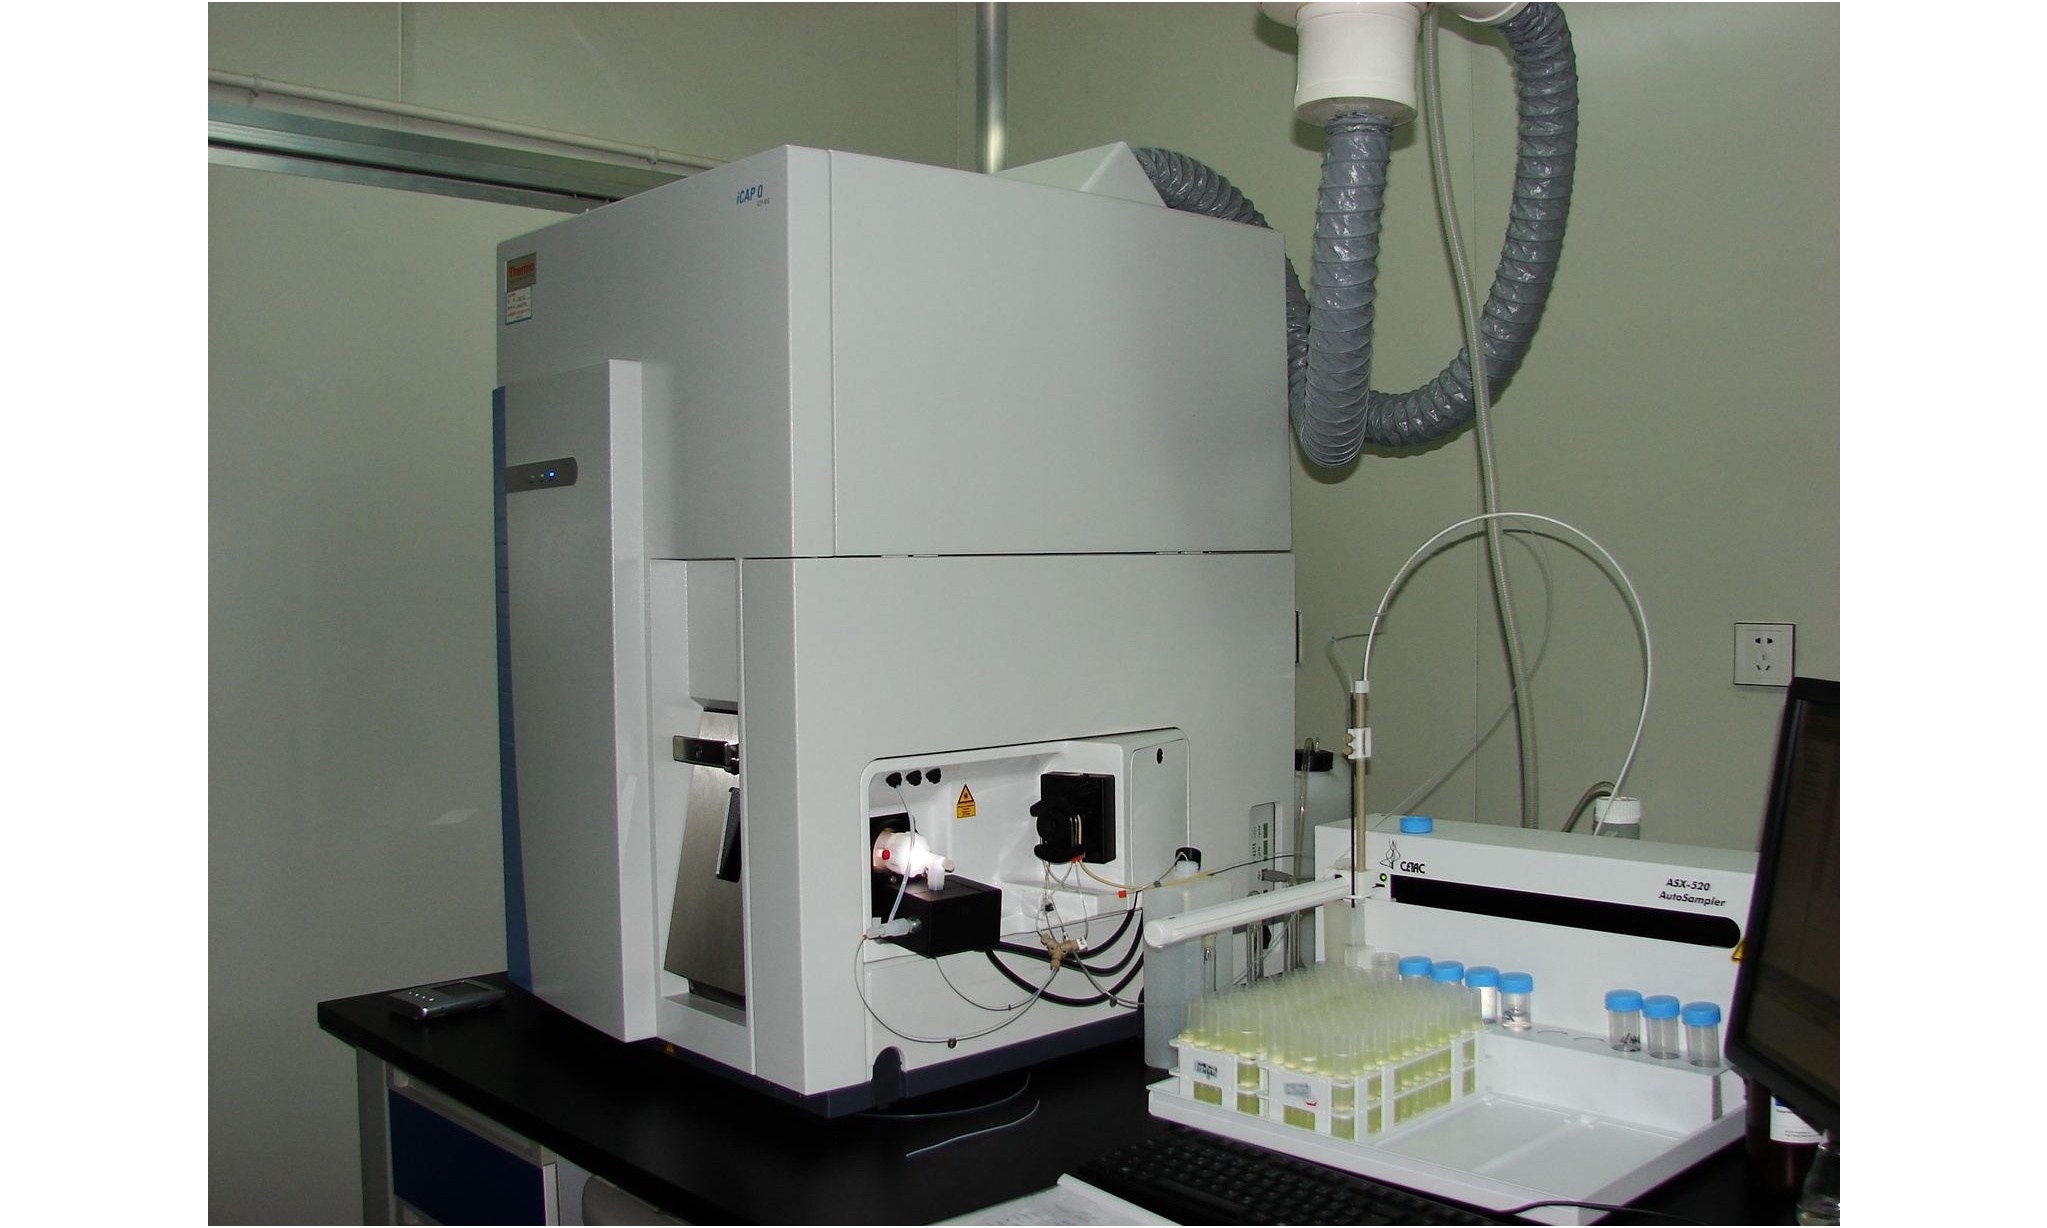 武威市疾病预防控制中心电感耦合等离子体质谱仪等仪器设备采购项目招标